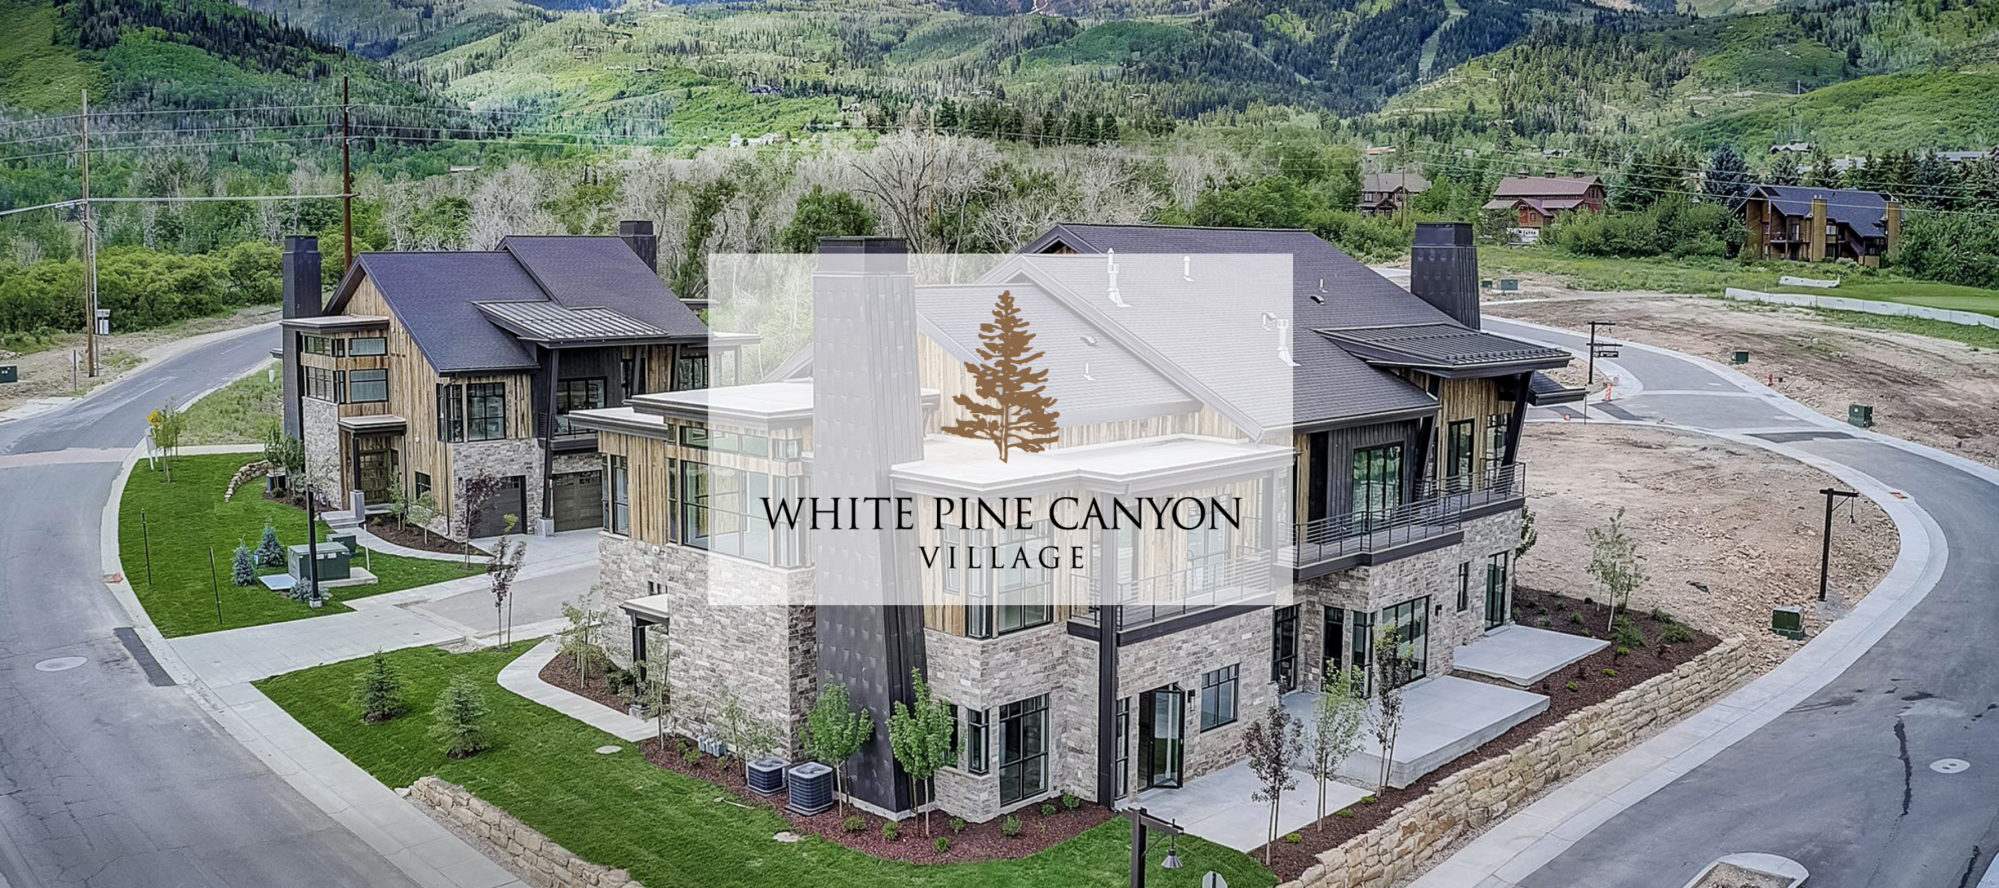 White Pine Canyon Village